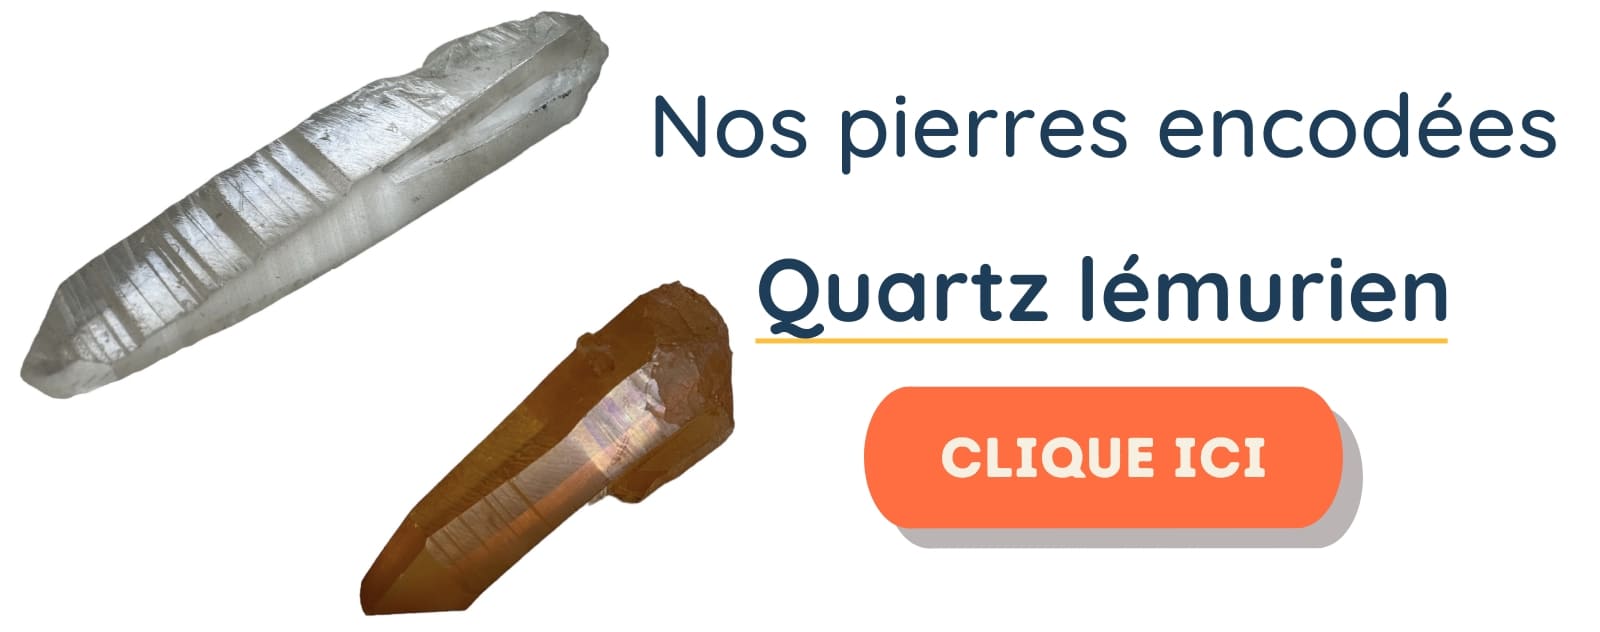 quartz lémurien brut